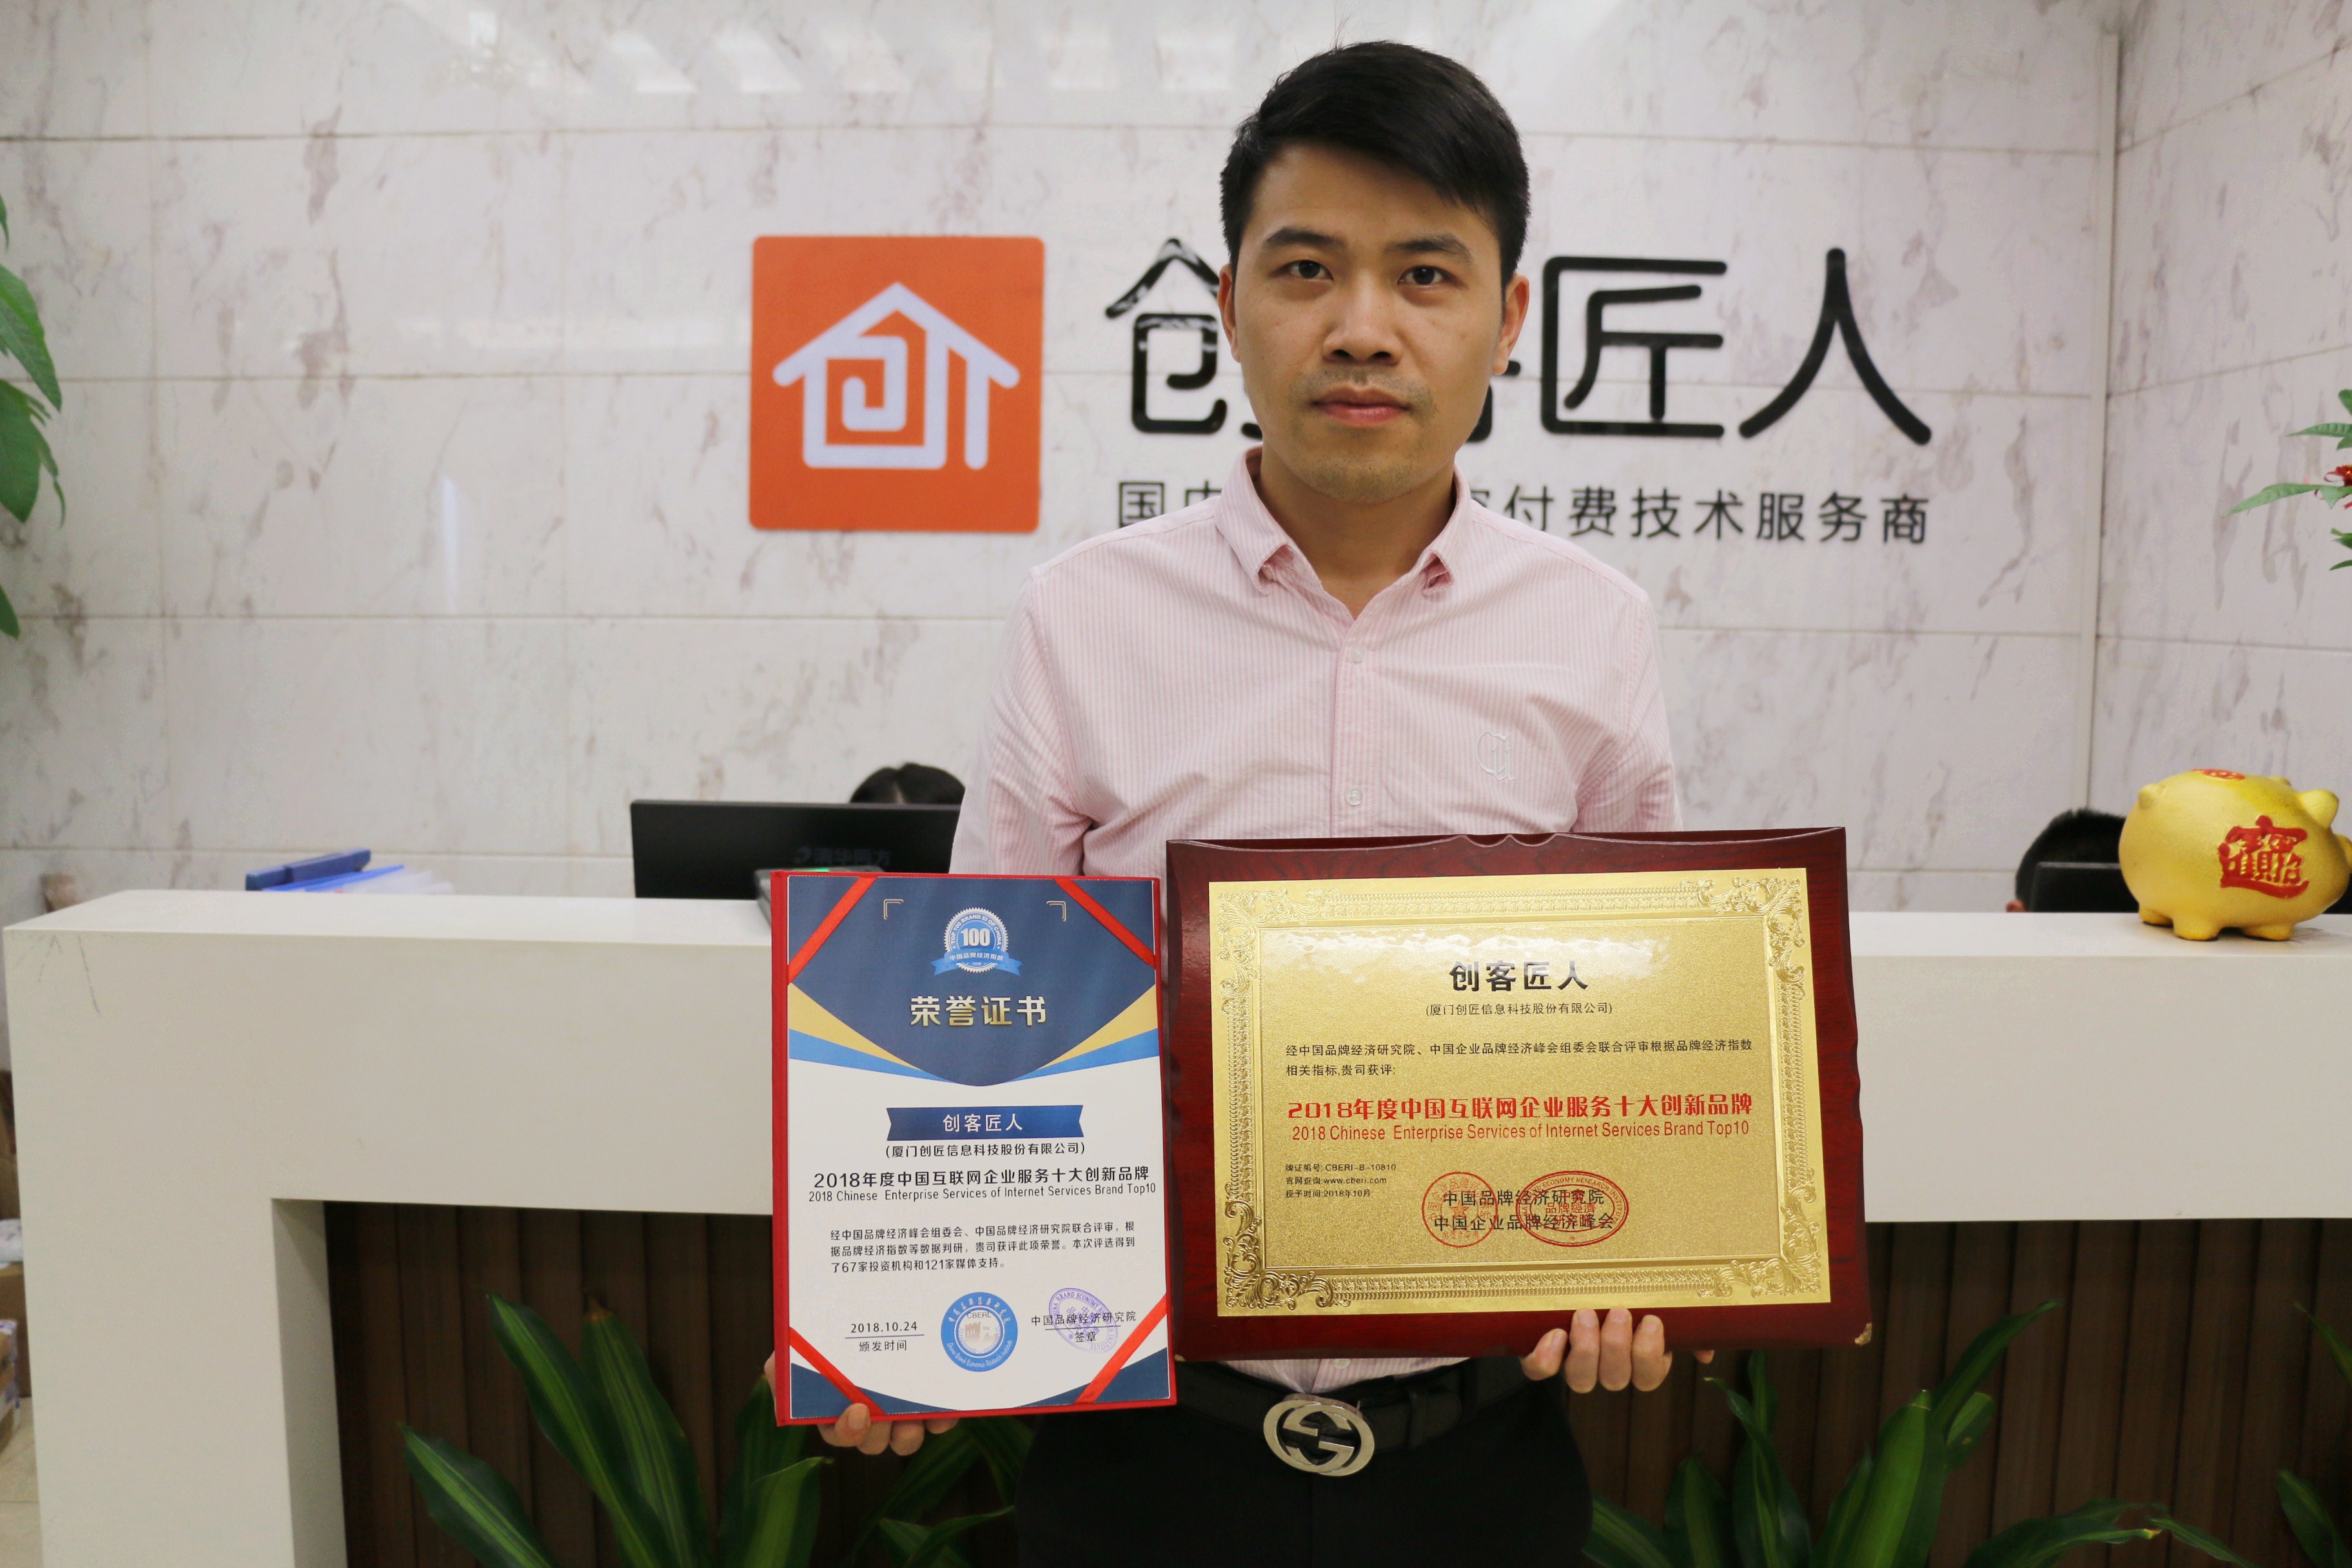  创客匠人荣获“2018年度中国互联网企业服务十大创新品牌”